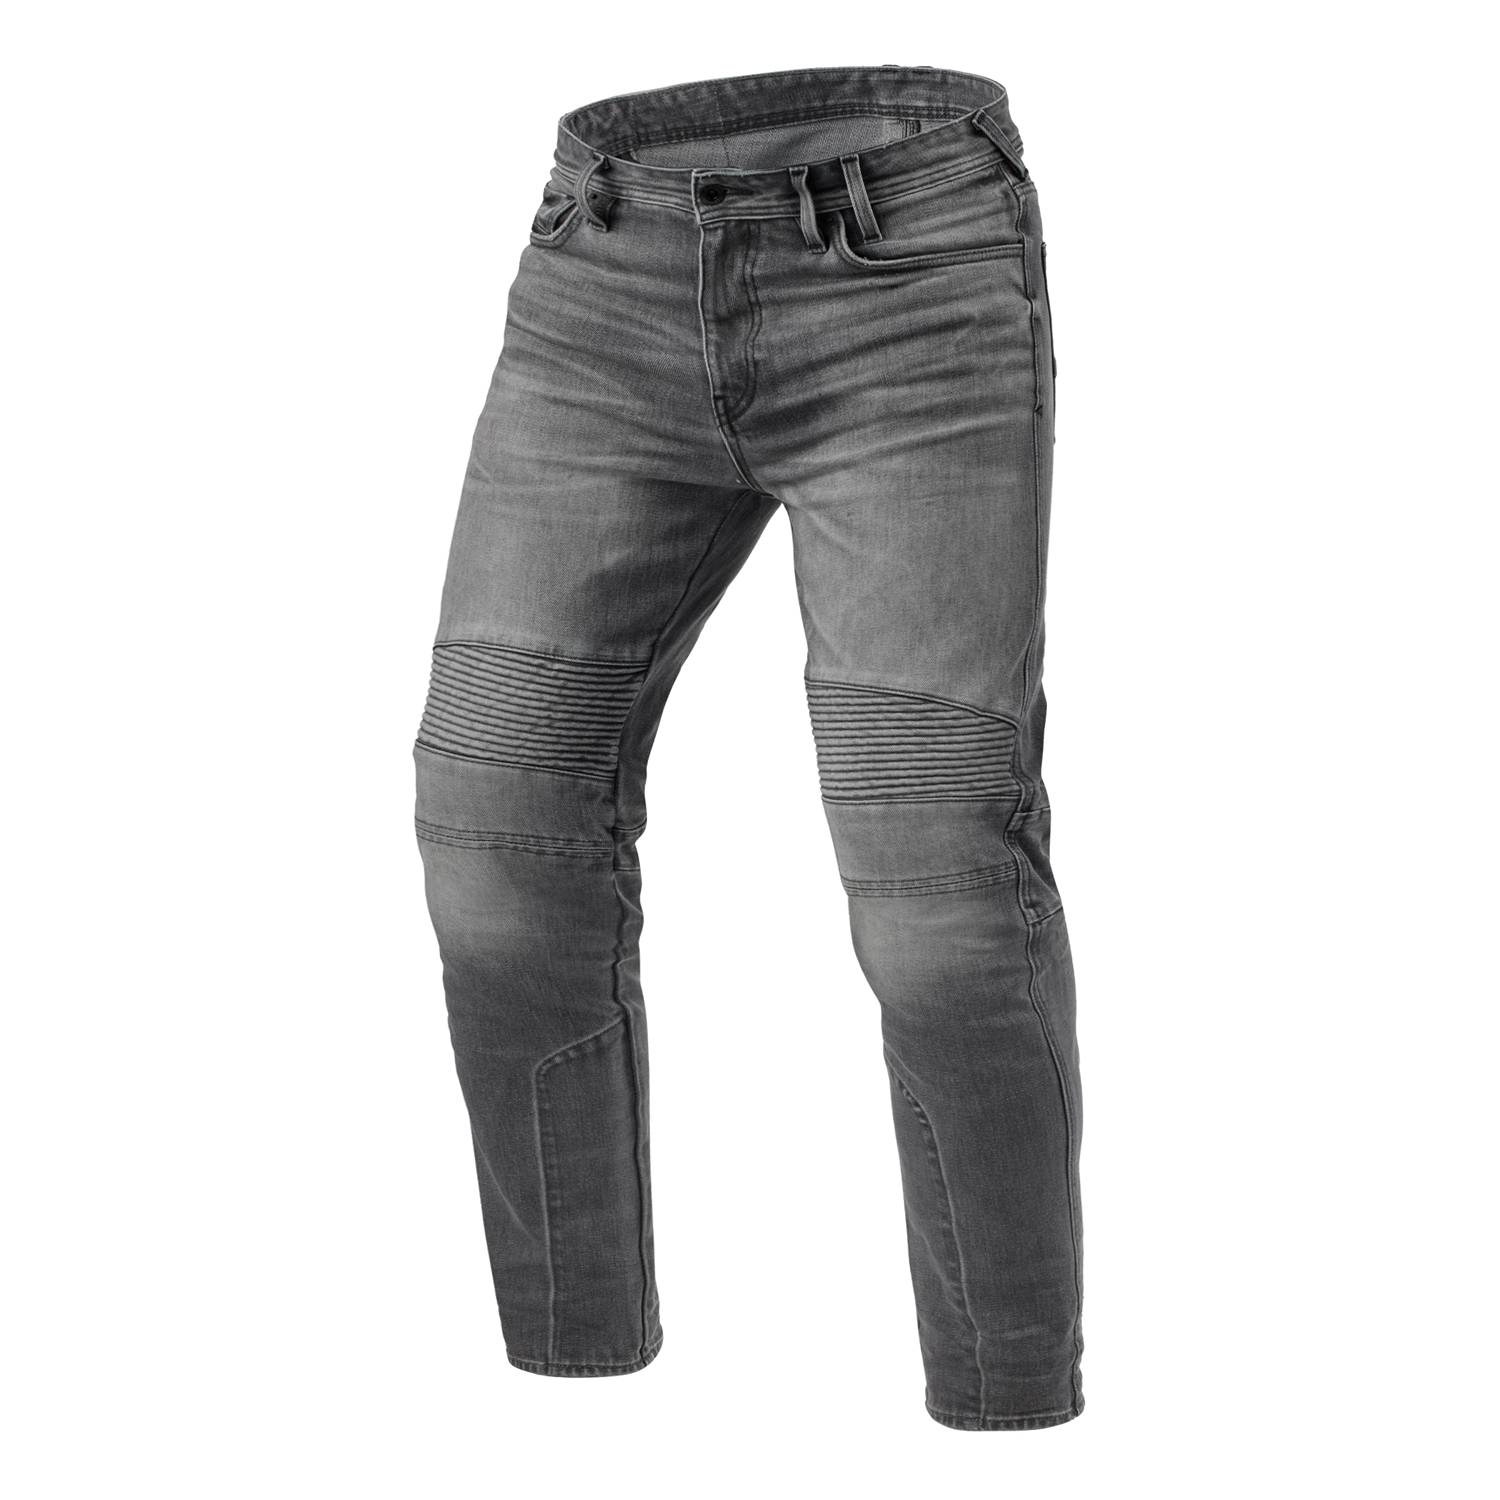 Image of REV'IT! Jeans Moto 2 TF Medium Grey Used L32 Size L32/W34 ID 8700001375627